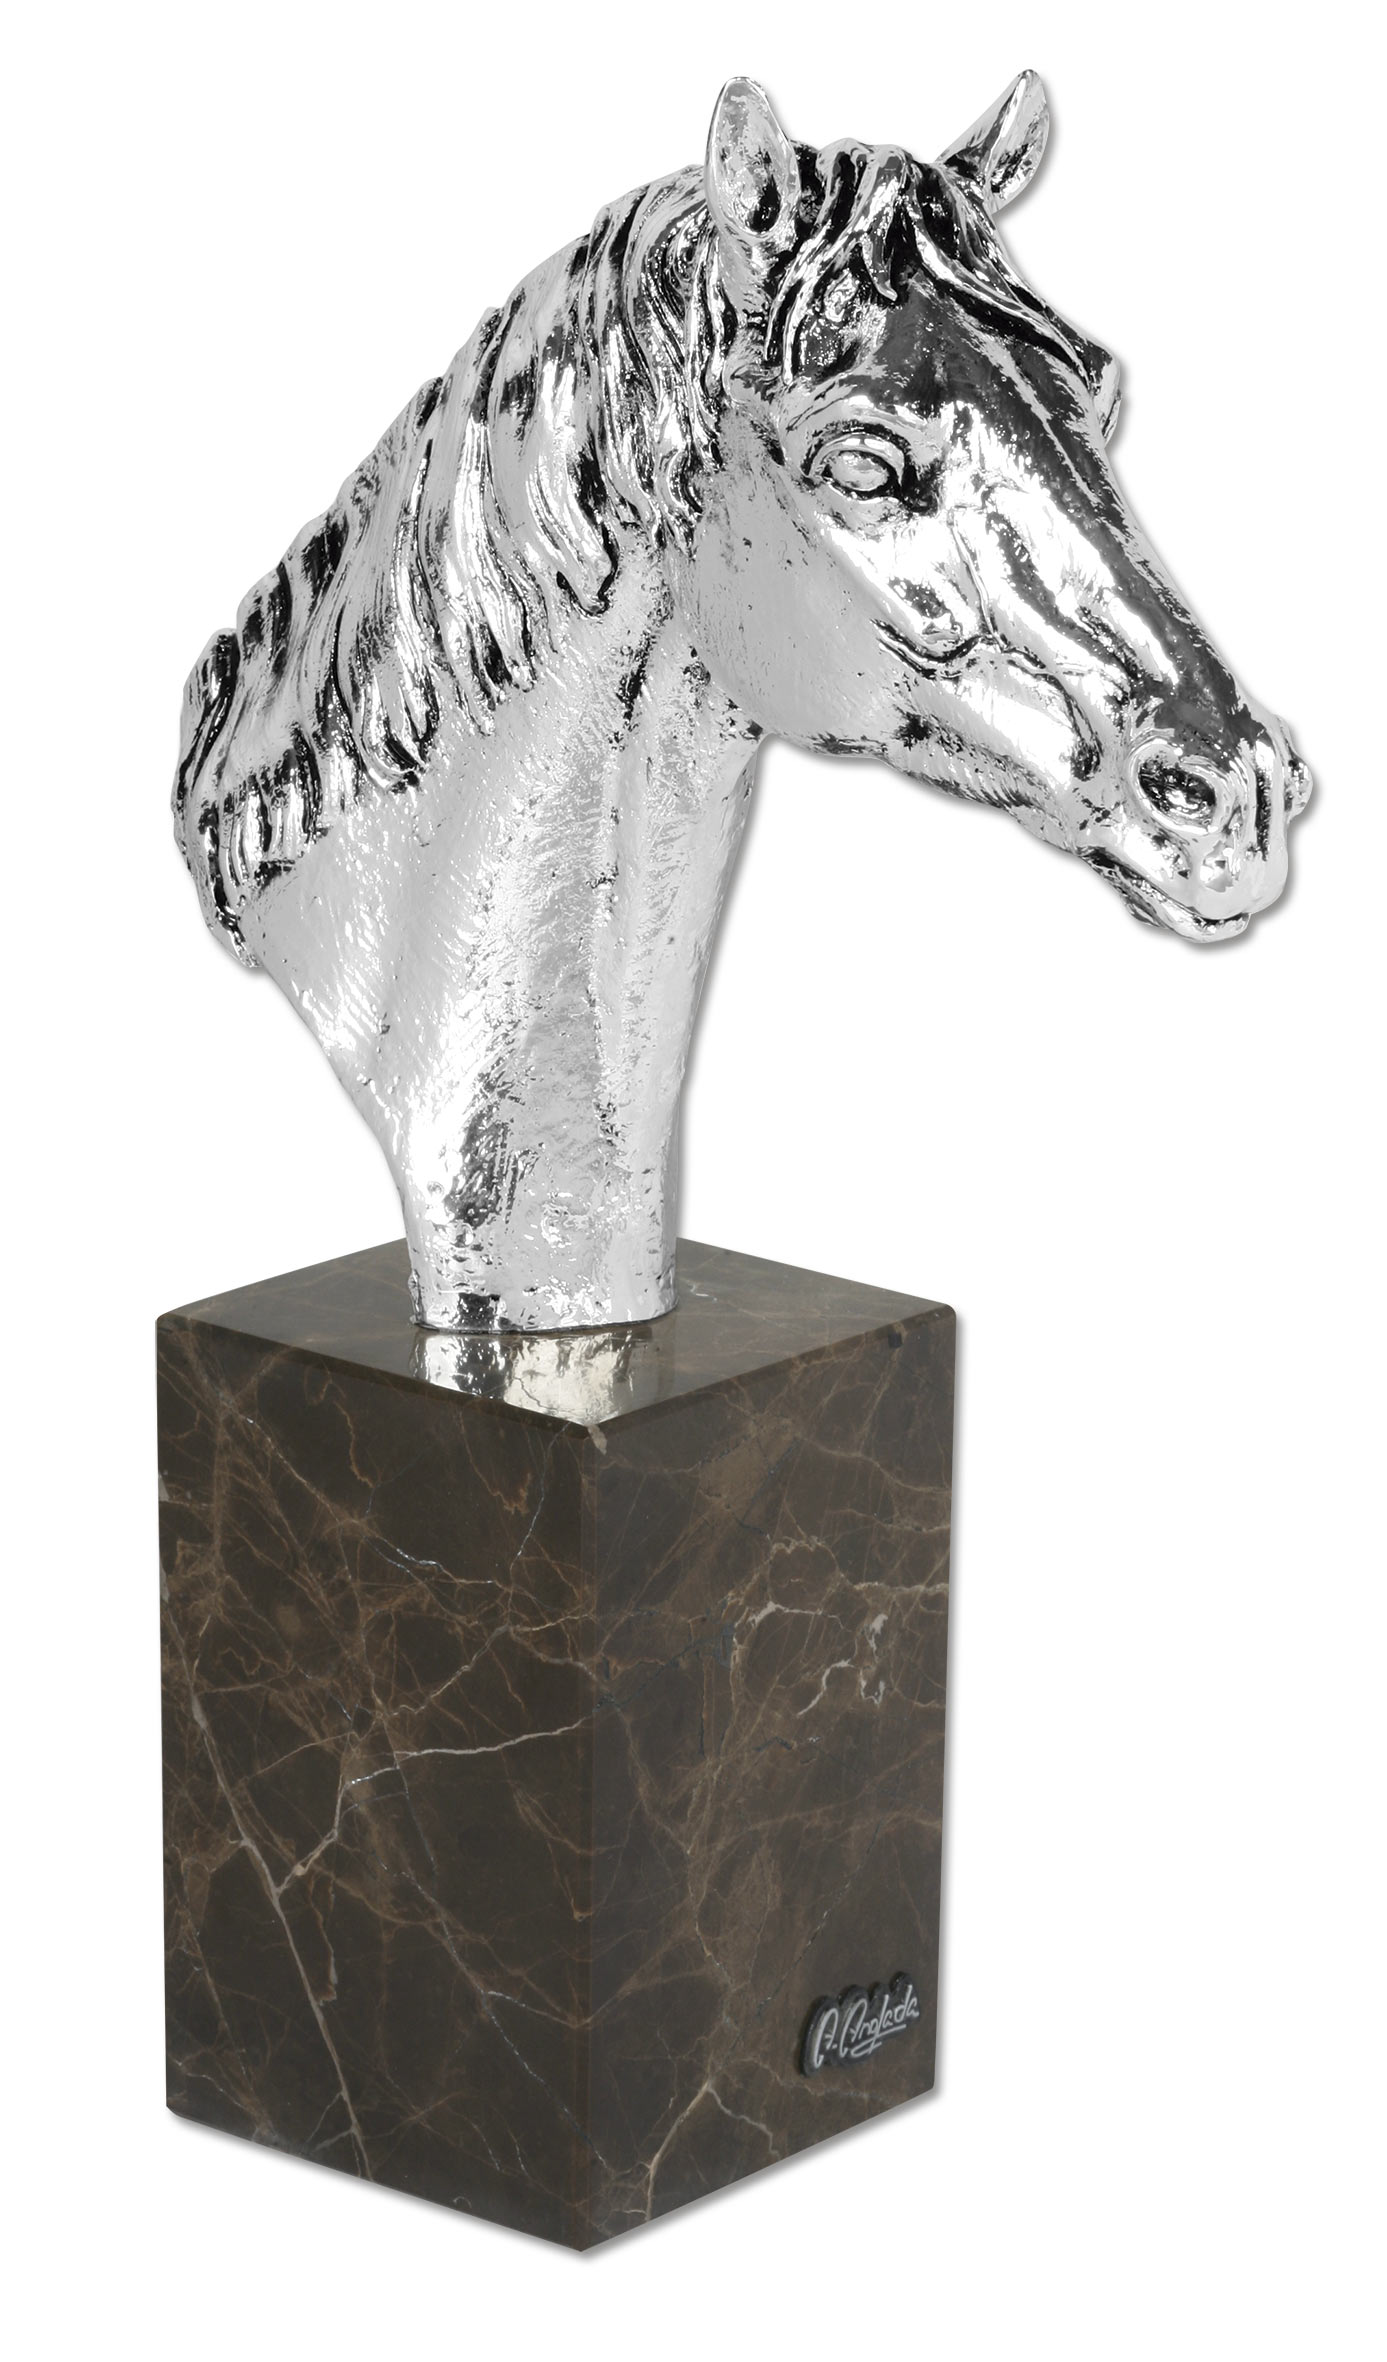 ref: 329P - Busto caballo plata - 8 x 21 x 29 cm